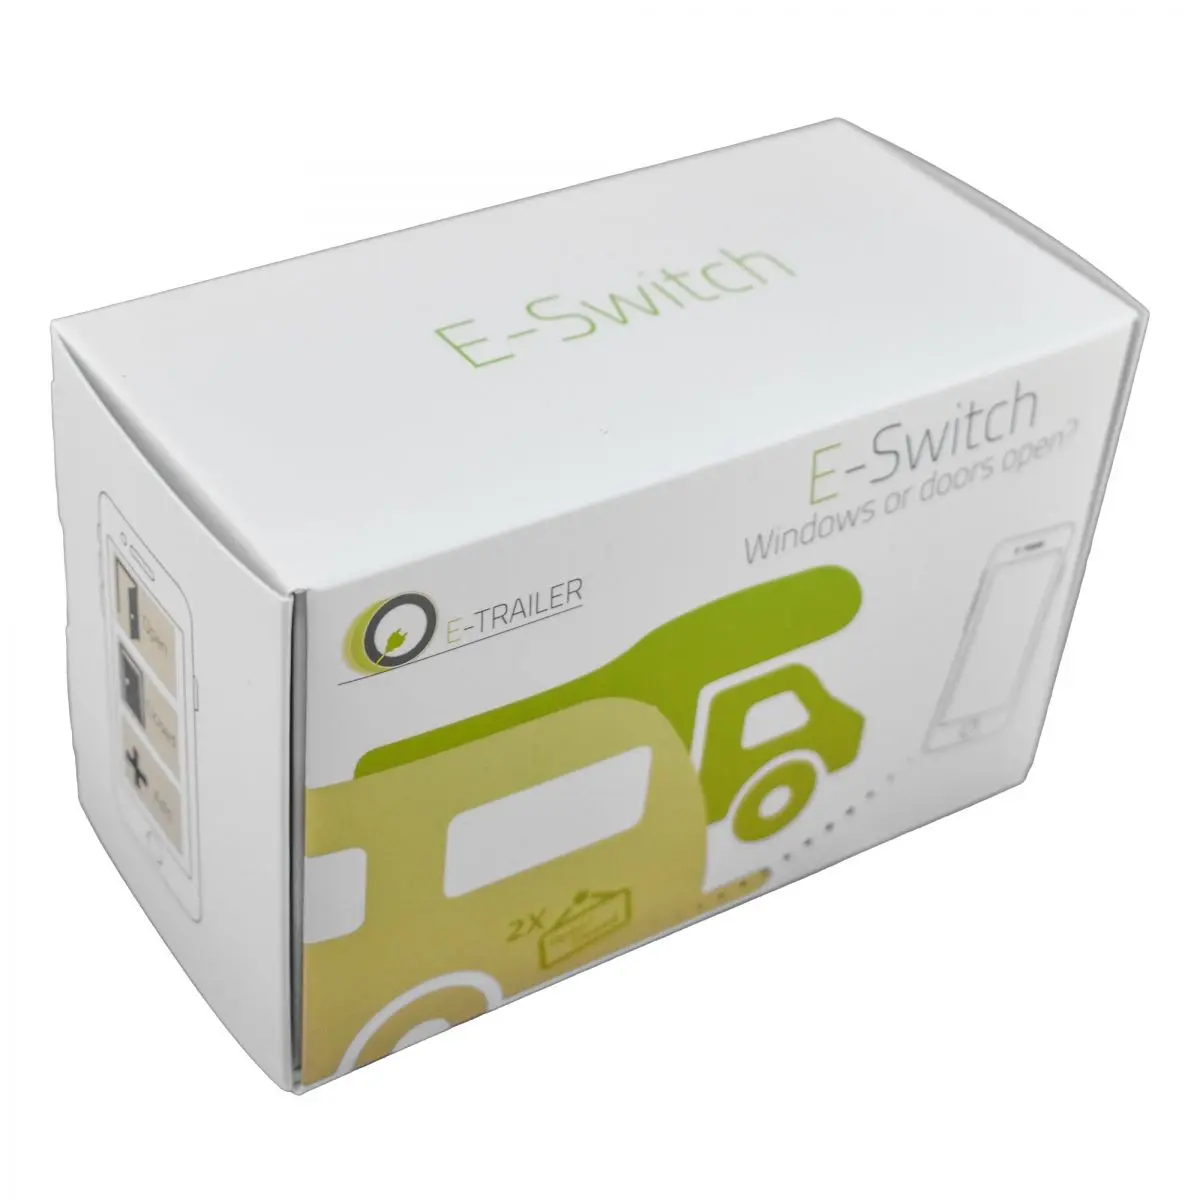 Senzor na monitorovanie dverí a okien - E-Switch